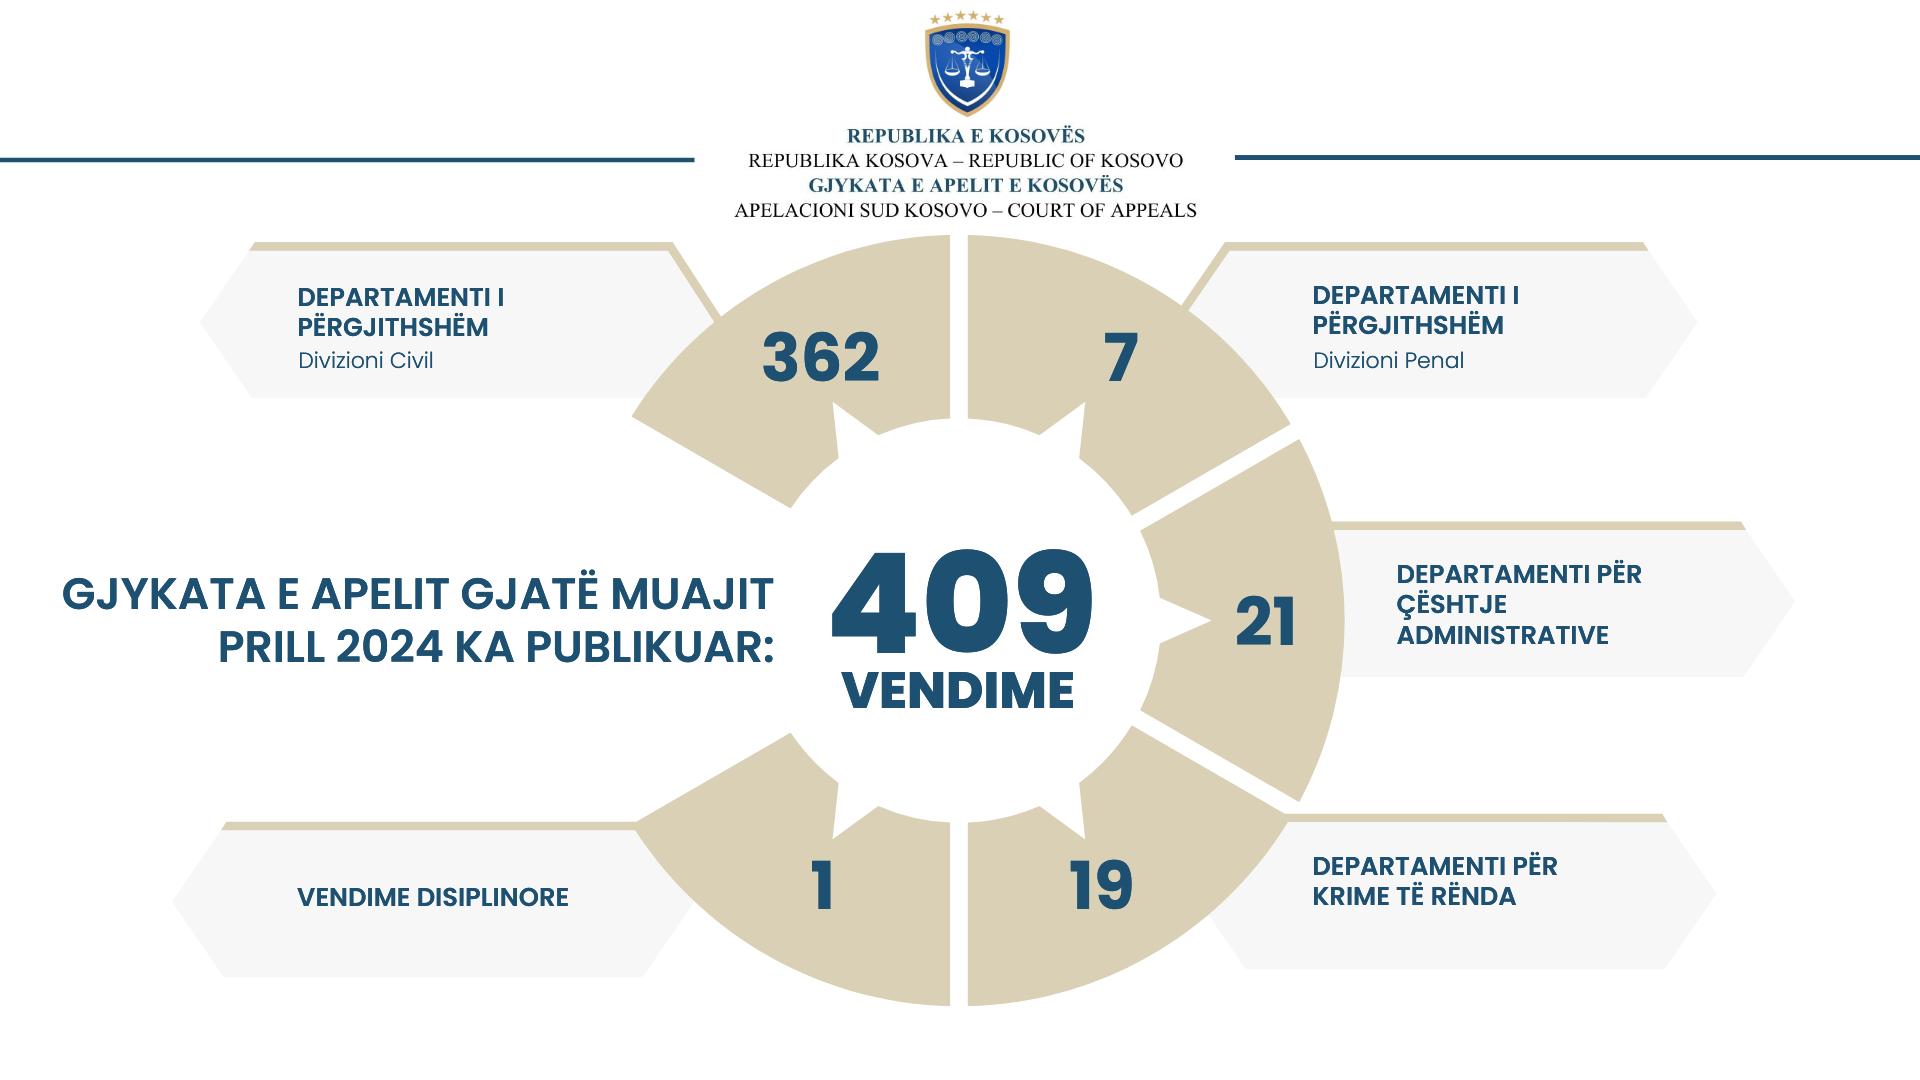 Gjykata e Apelit e Kosovës gjatë muajit Prill ka publikuar 409 vendime